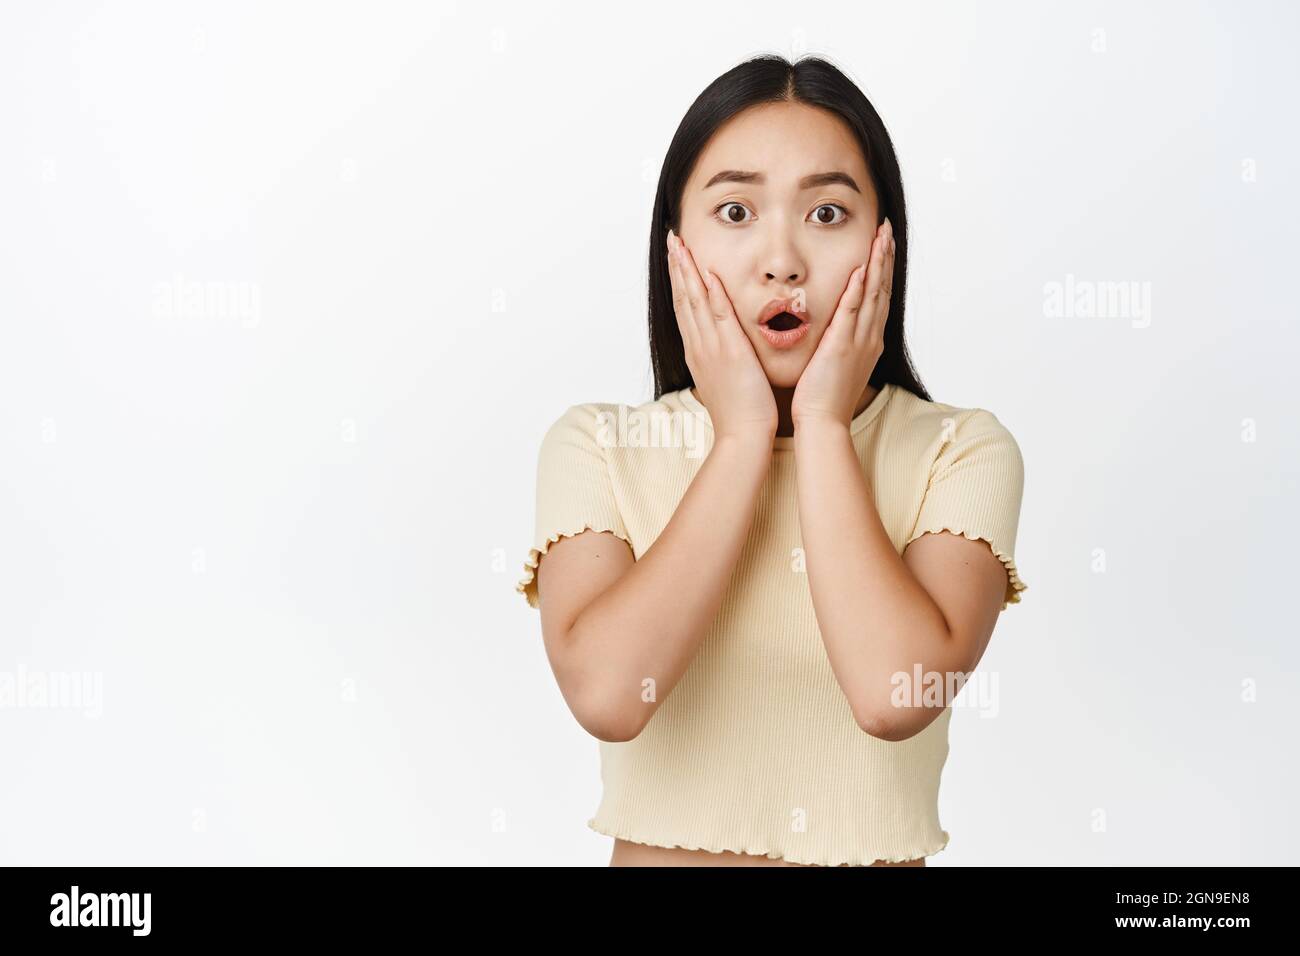 Scioccata e preoccupata ragazza asiatica che guarda preoccupato, fissando la fotocamera, tenendo le mani sul viso, in piedi su sfondo bianco Foto Stock